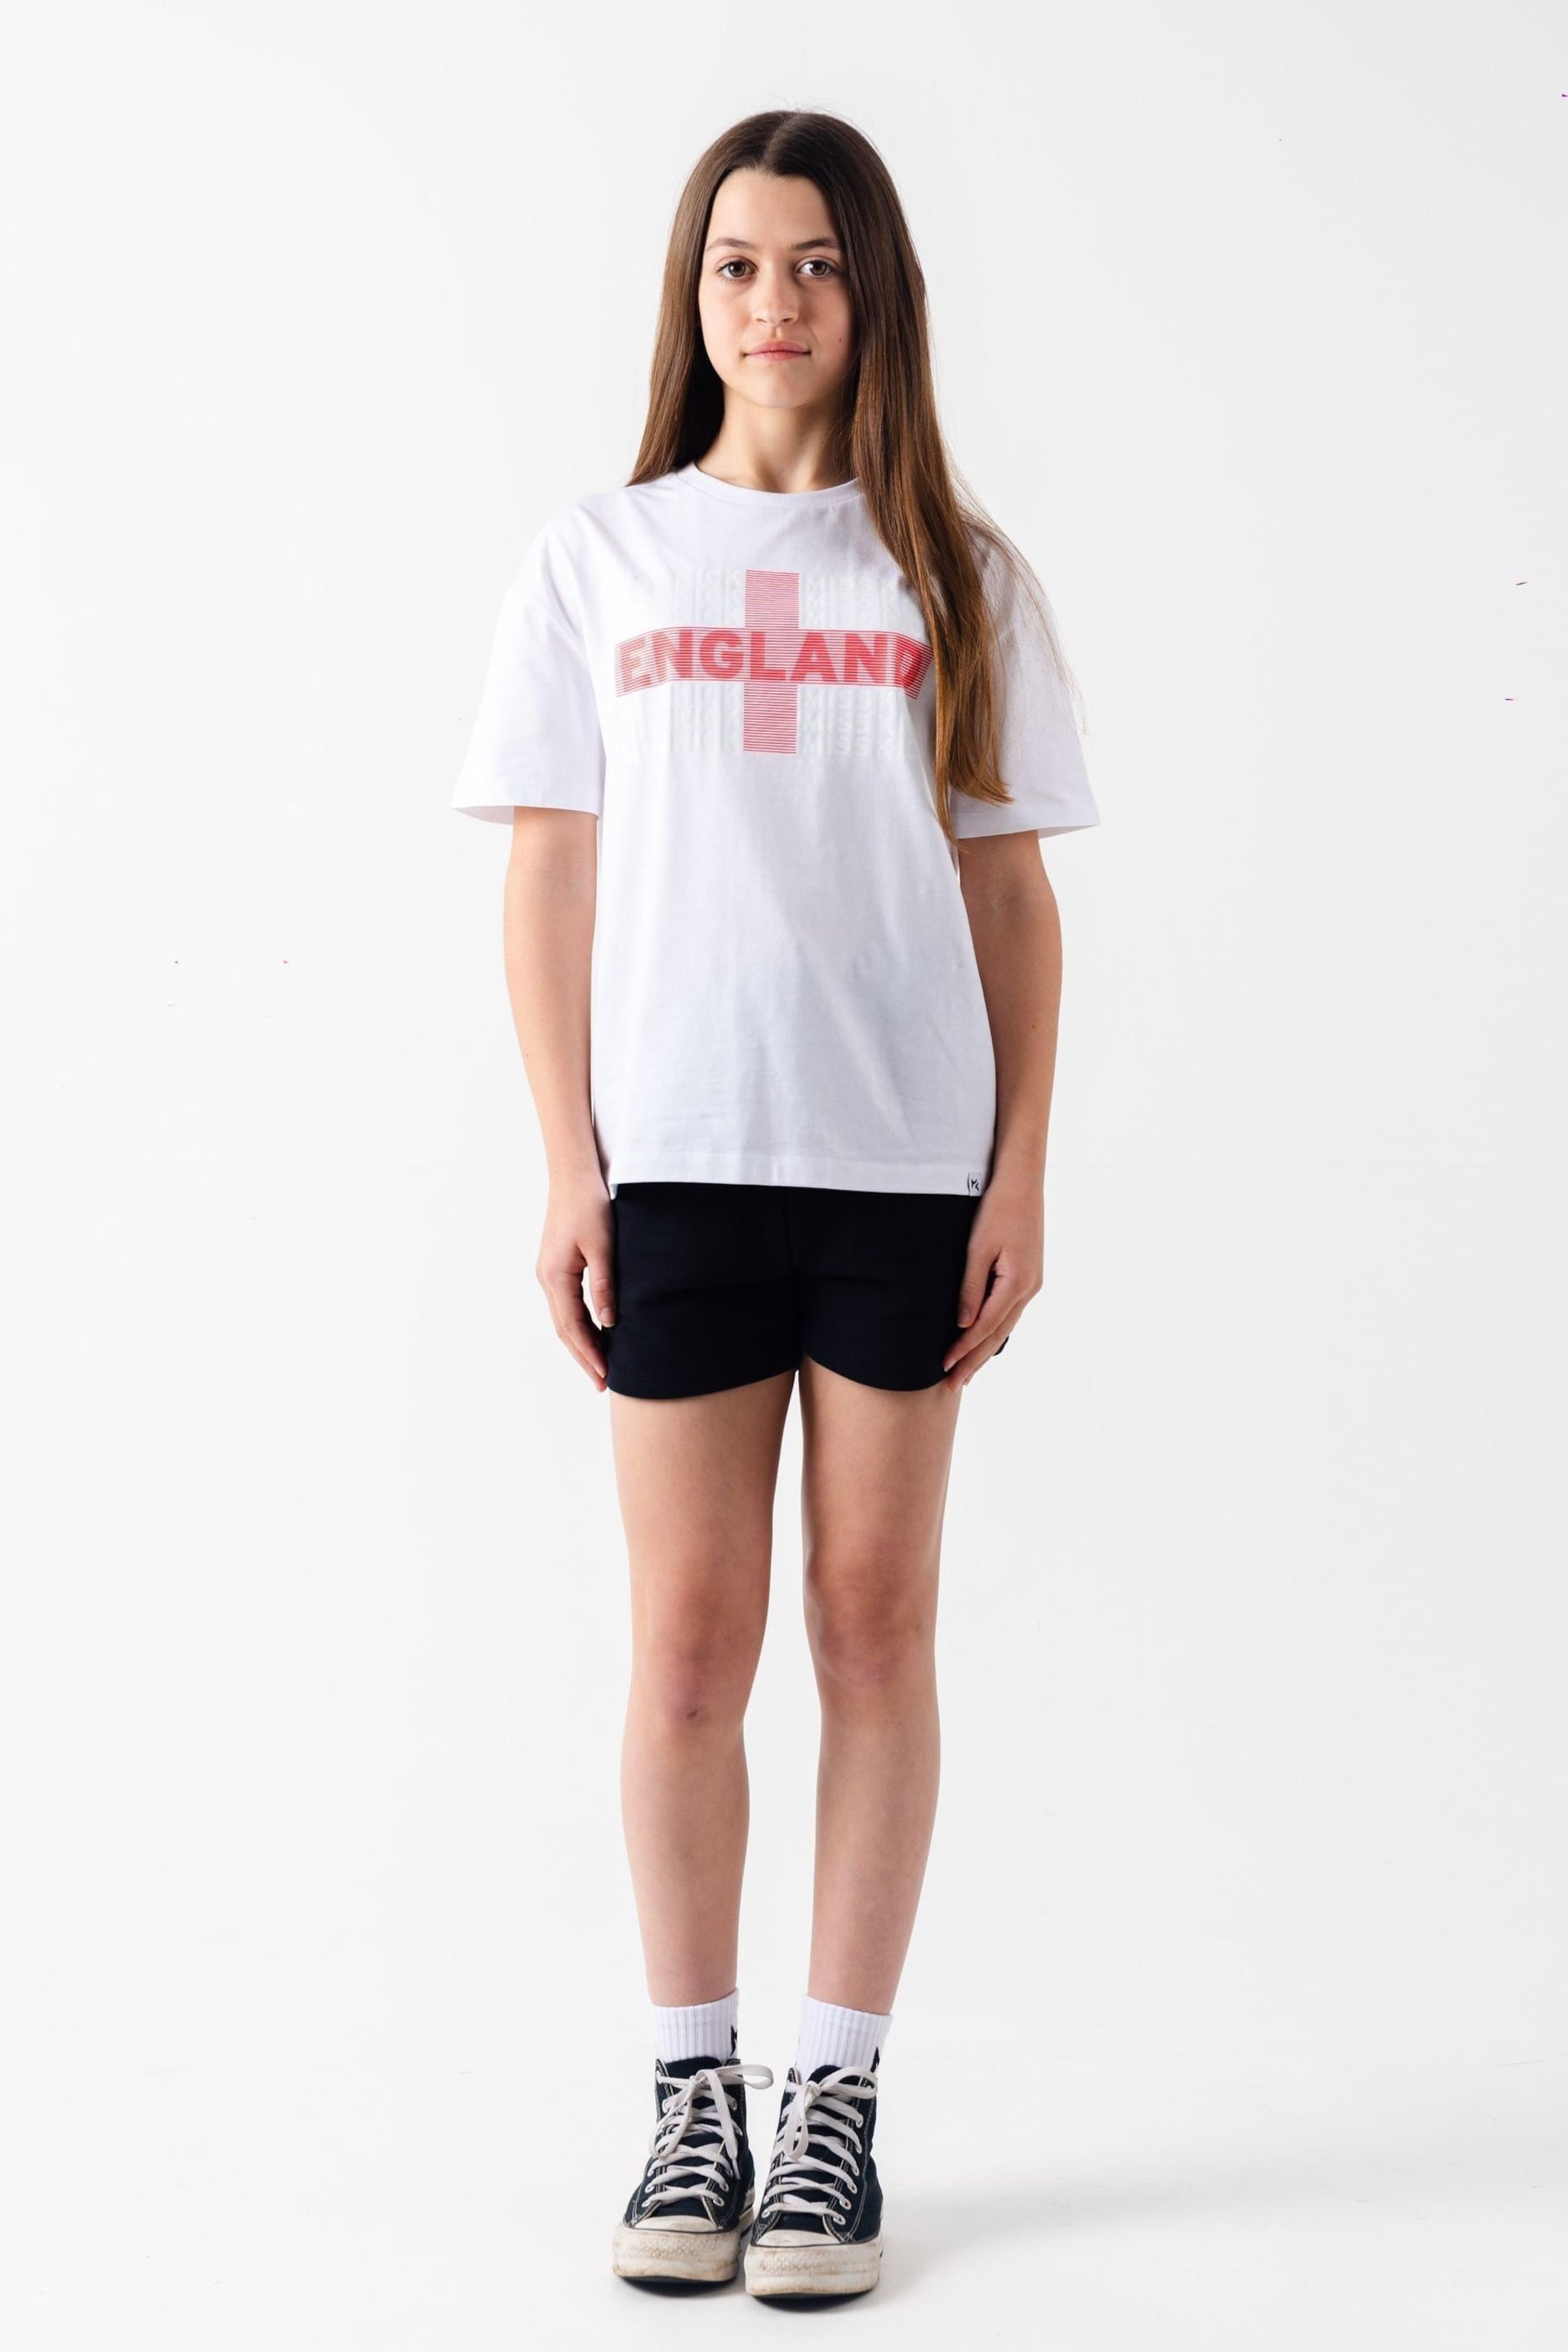 Miss Kick Girls Gabby White T-Shirt - Image 1 of 5